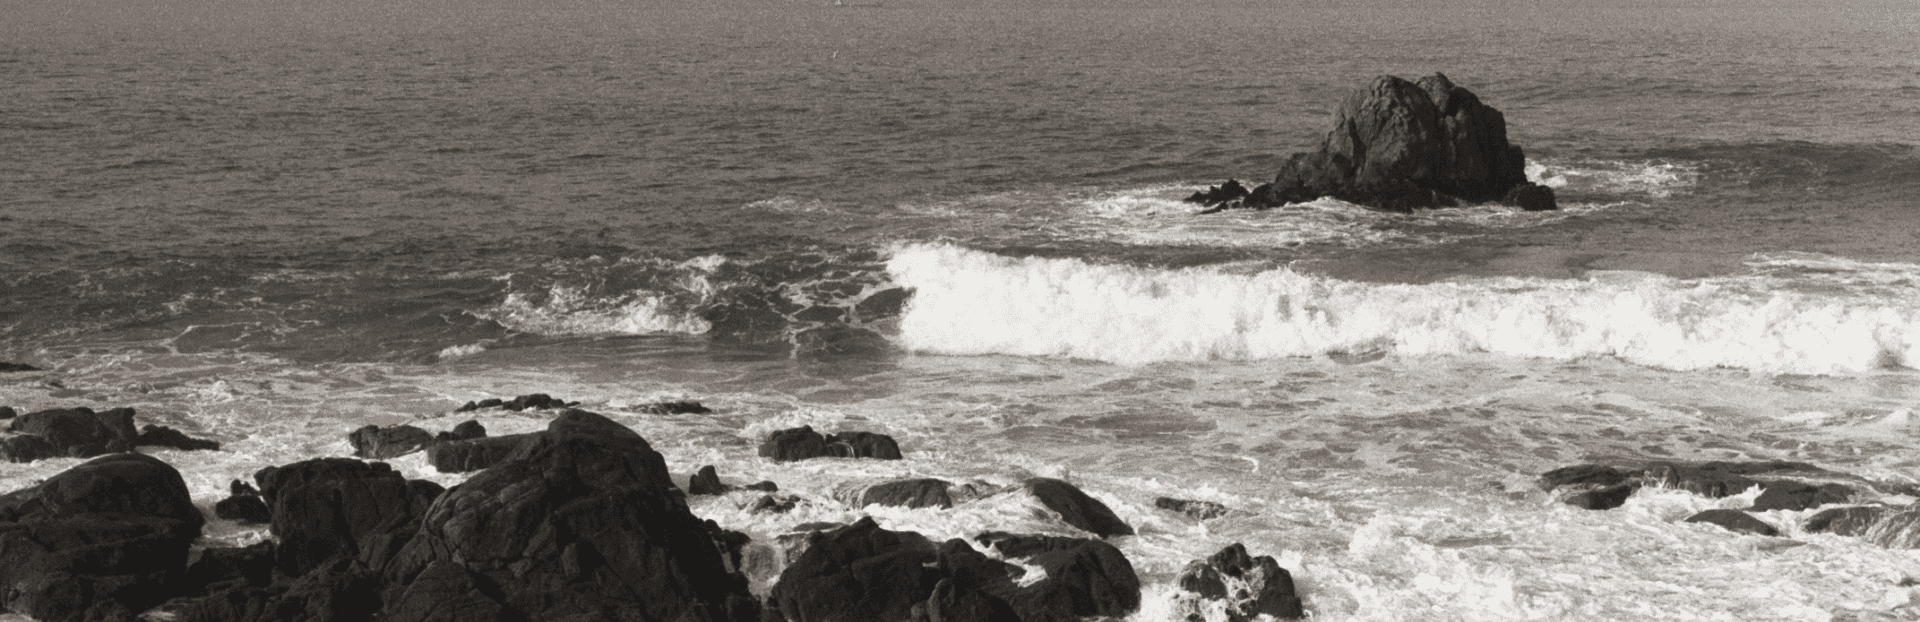 paisagem do mar com ondas e pedras